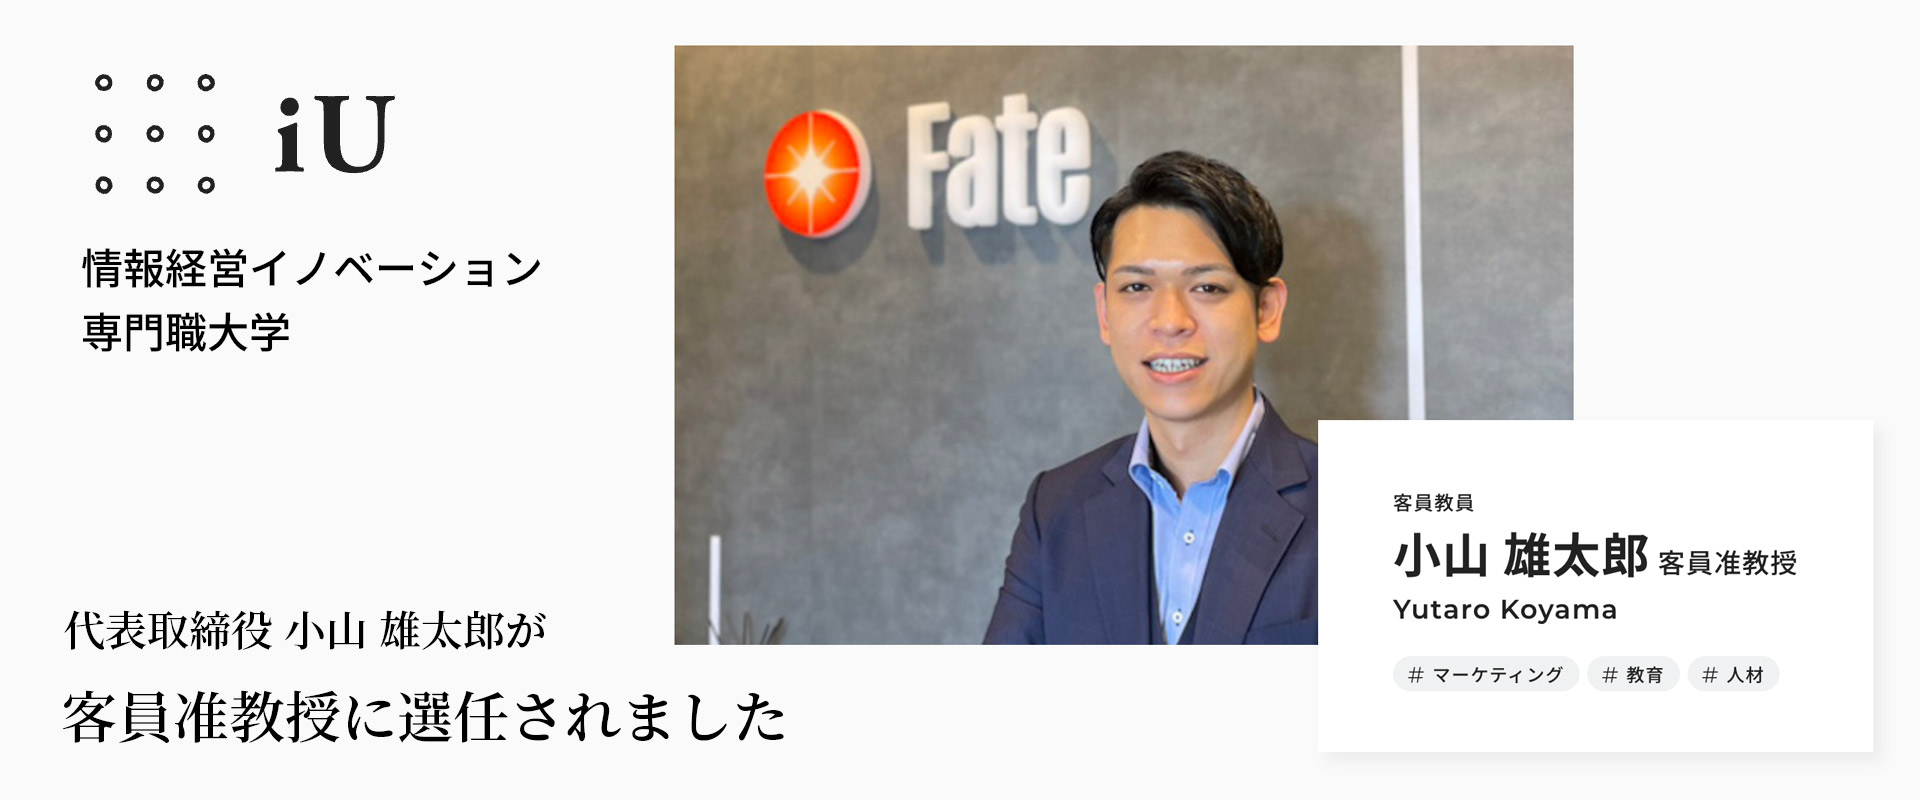 Fate Yutaro Koyama IU Professor